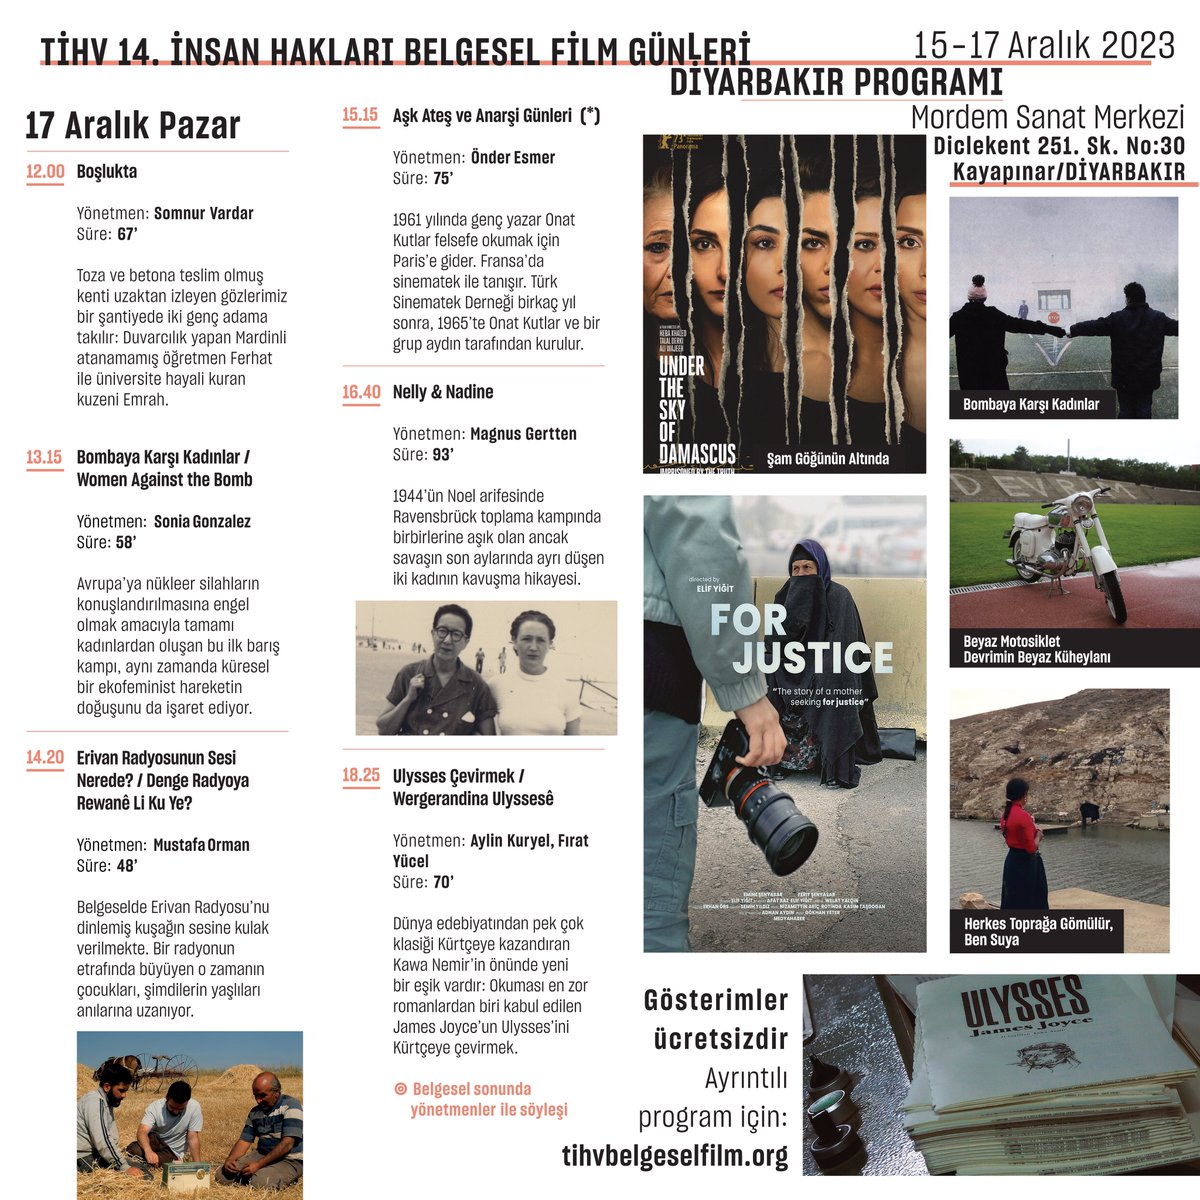 TİHV 14. İnsan Hakları Belgesel Film Günleri, 15 - 17 Aralık 2023 tarihleri arasında #Diyarbakır'a konuk oluyor. 🎬Türkiye'den ve dünyadan 18 seçme #belgesel #film, yönetmenlerle söyleşiler... 📍Mordem Sanat Merkezi #sinema Ayrıntılı program için 👇🏼 is.gd/pP5vnY